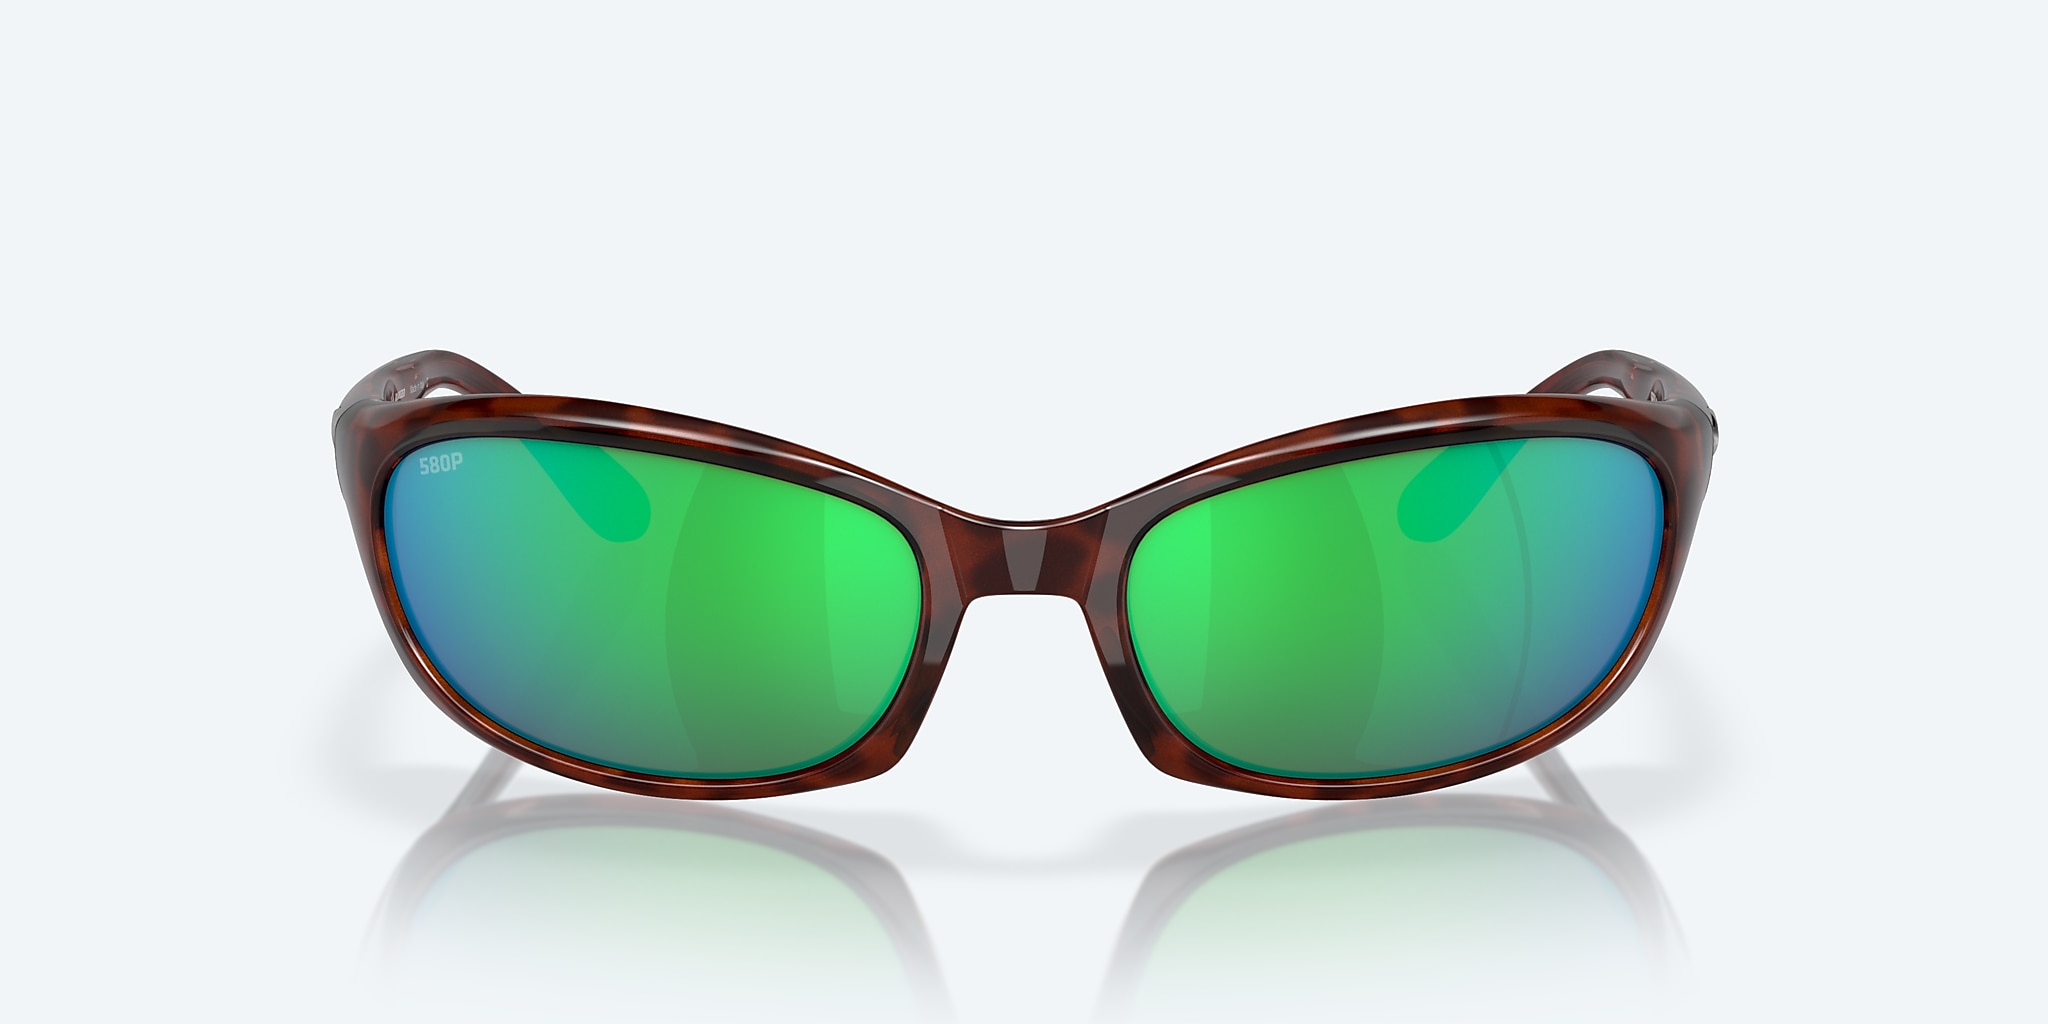 Costa Del Mar Harpoon Sunglasses - Tortoise/Green Mirror 580P